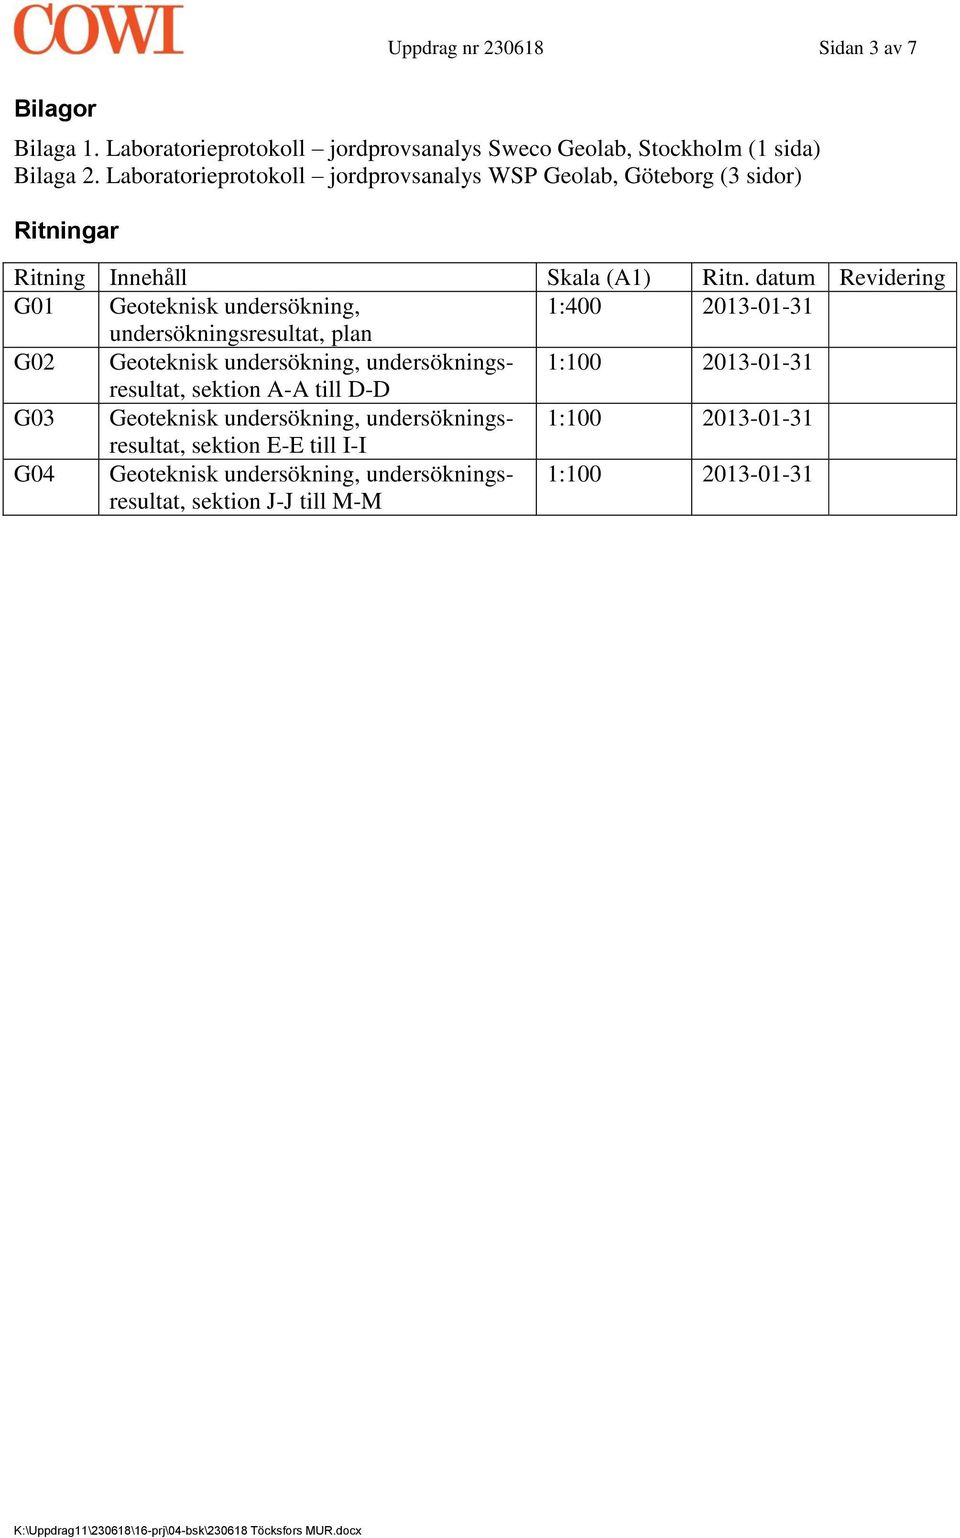 datum Revidering G01 Geoteknisk undersökning, 1:400 2013-01-31 undersökningsresultat, plan G02 Geoteknisk undersökning, undersökningsresultat, 1:100